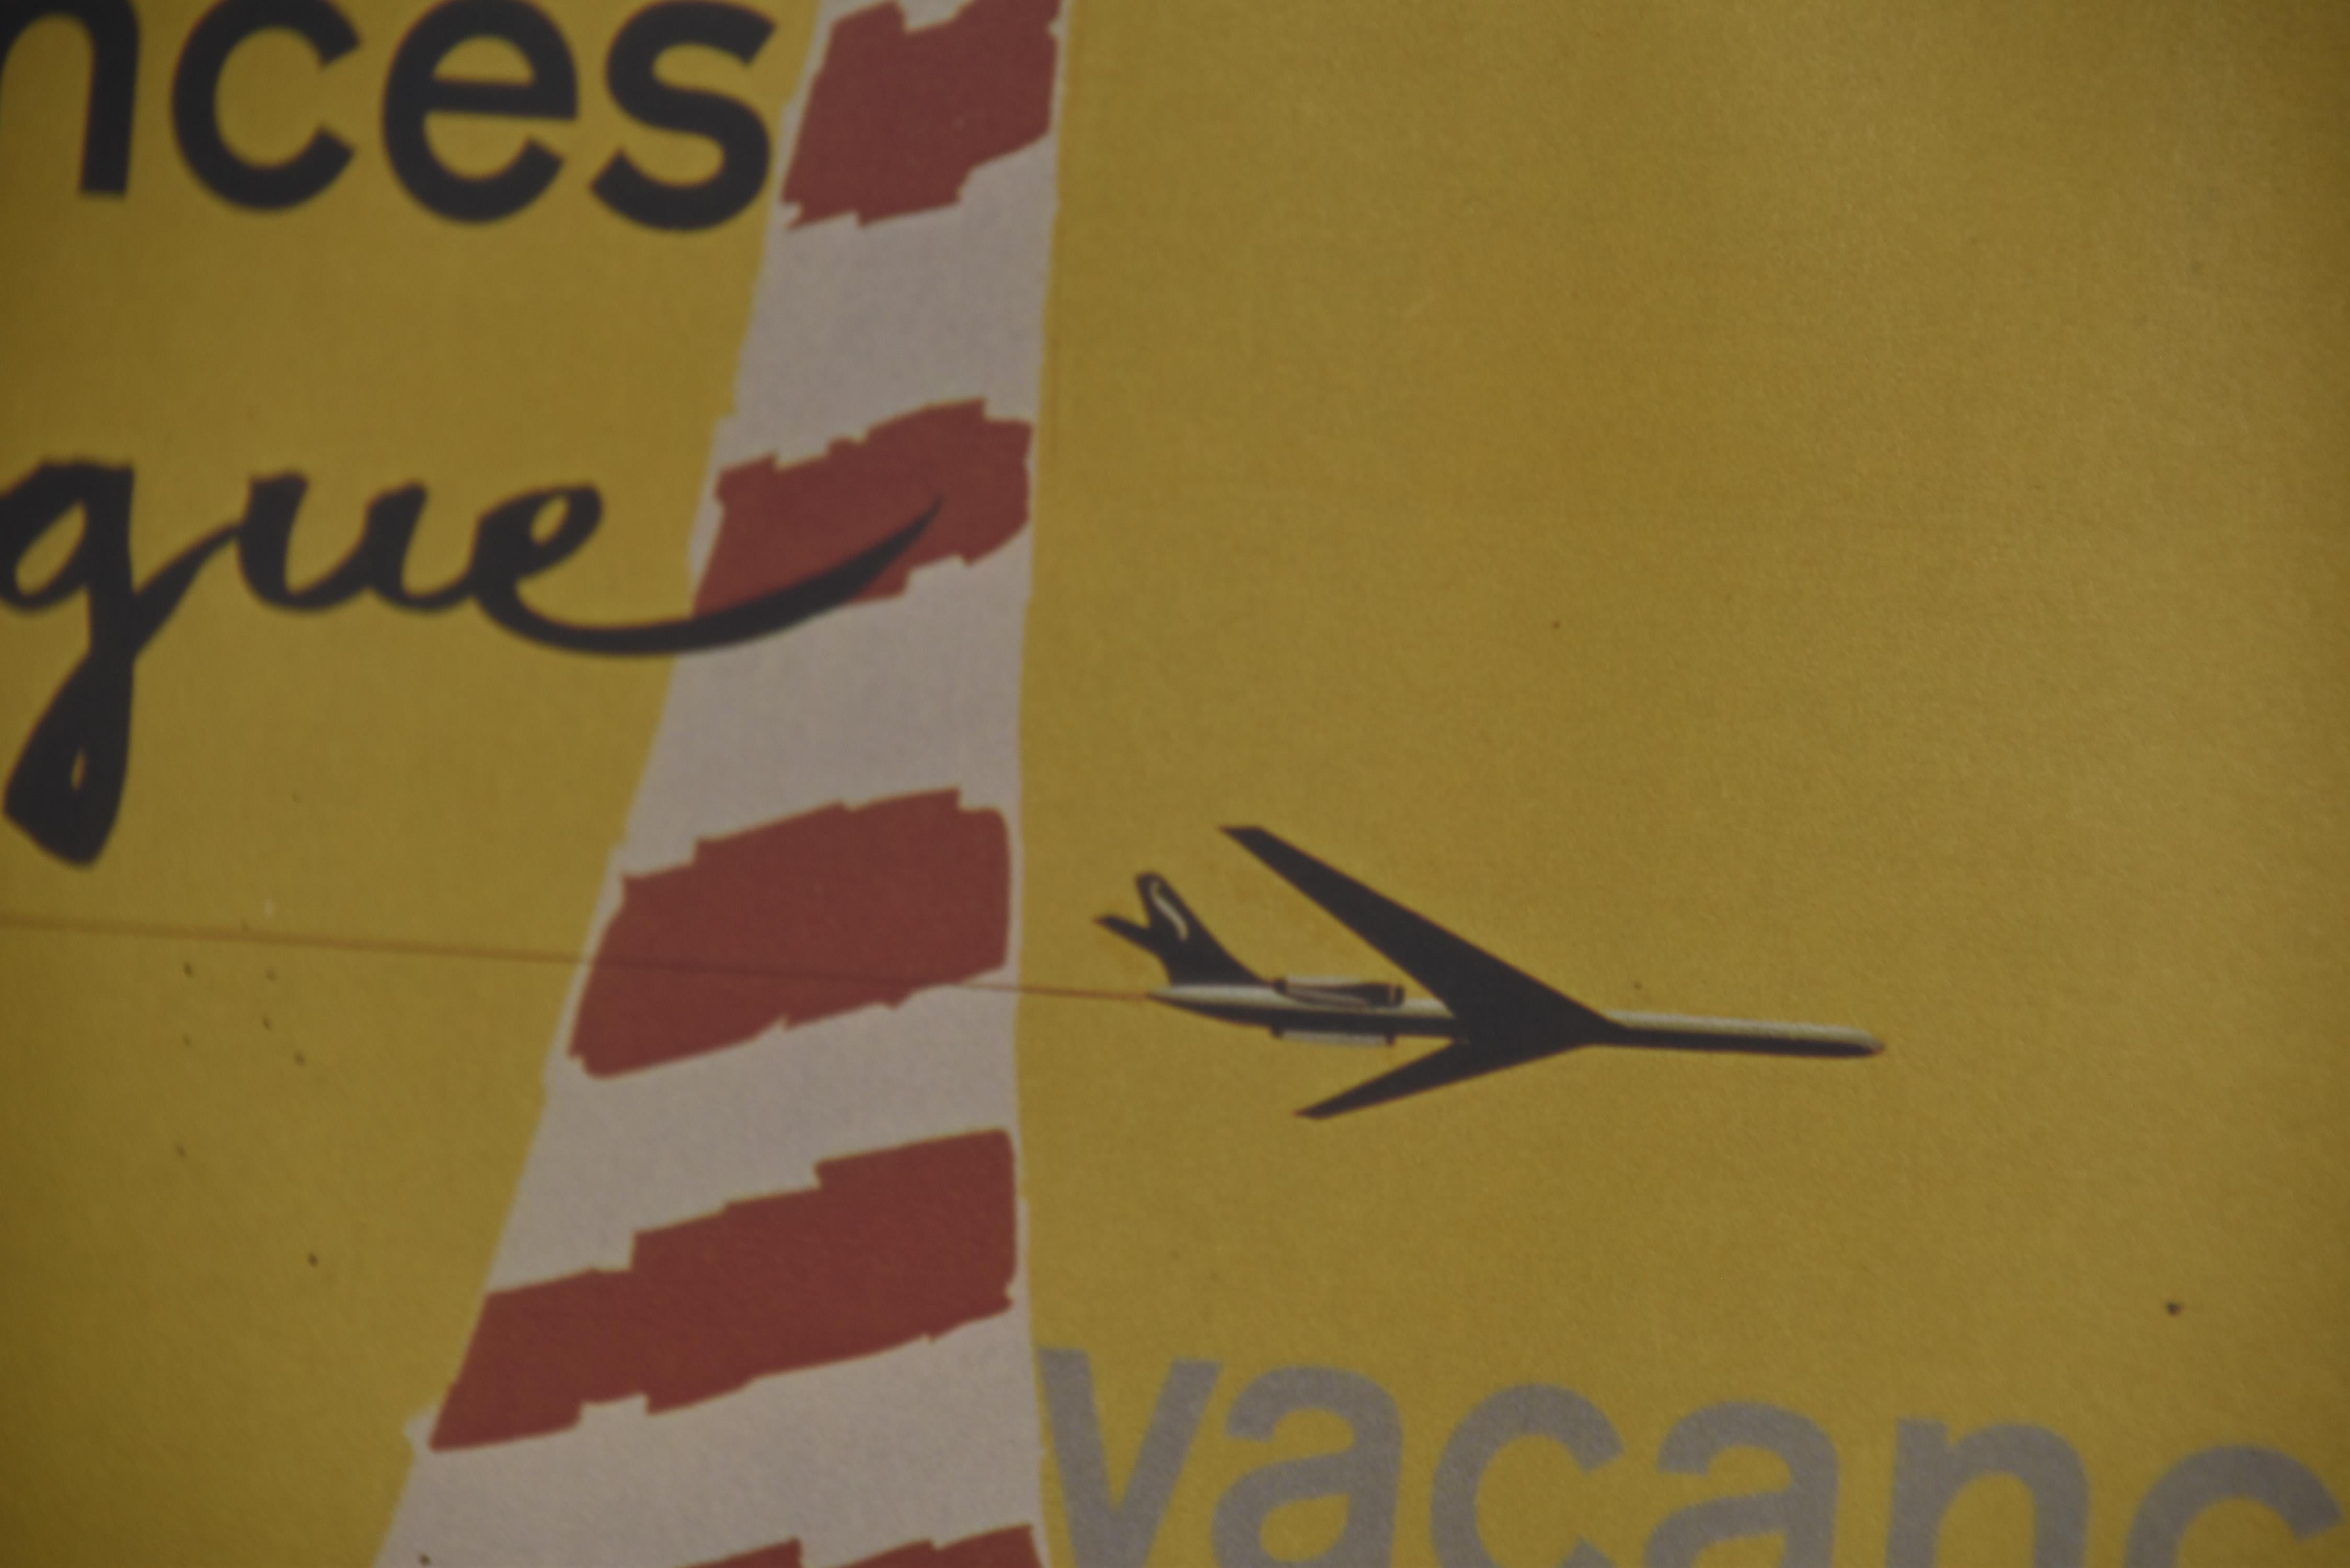 Vieille affiche publicitaire pour la compagnie aérienne belge Sabena.

Années 1960 - Belgique

Hauteur : 52cm/20.47